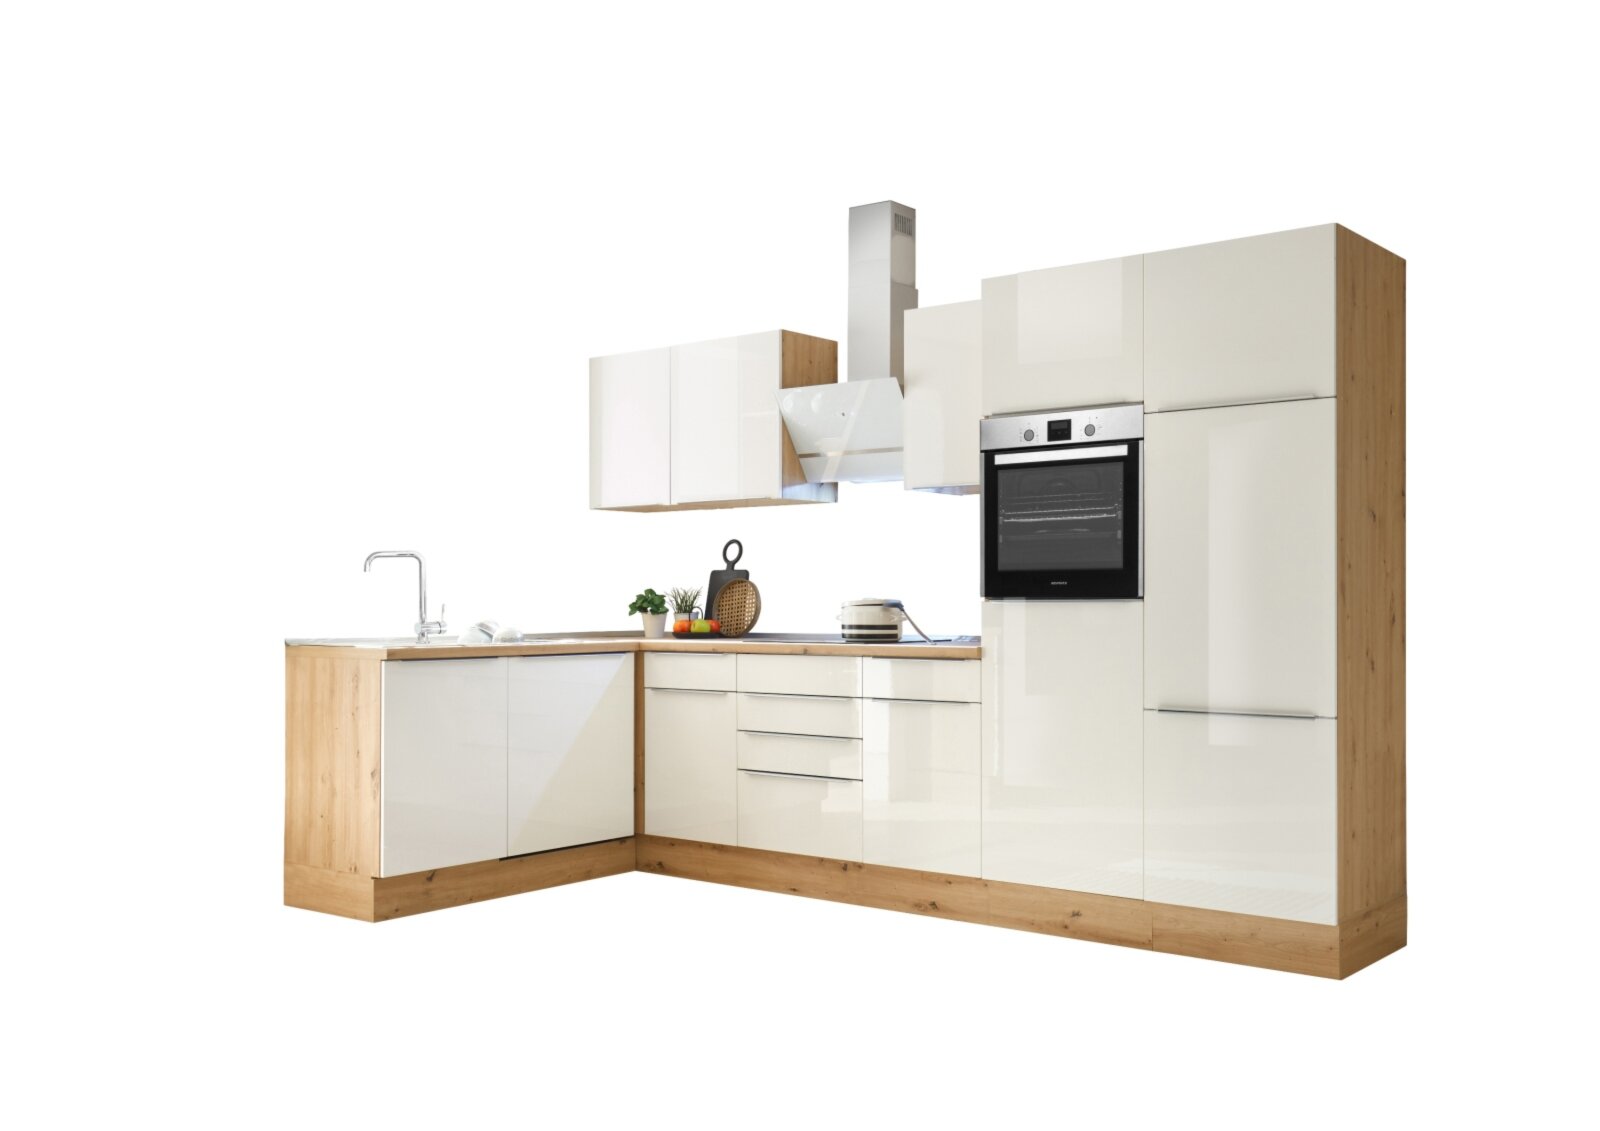 RESPEKTA Winkelküche - weiß Hochglanz - Artisan Eiche - mit E-Geräten - 340  cm | Online bei ROLLER kaufen